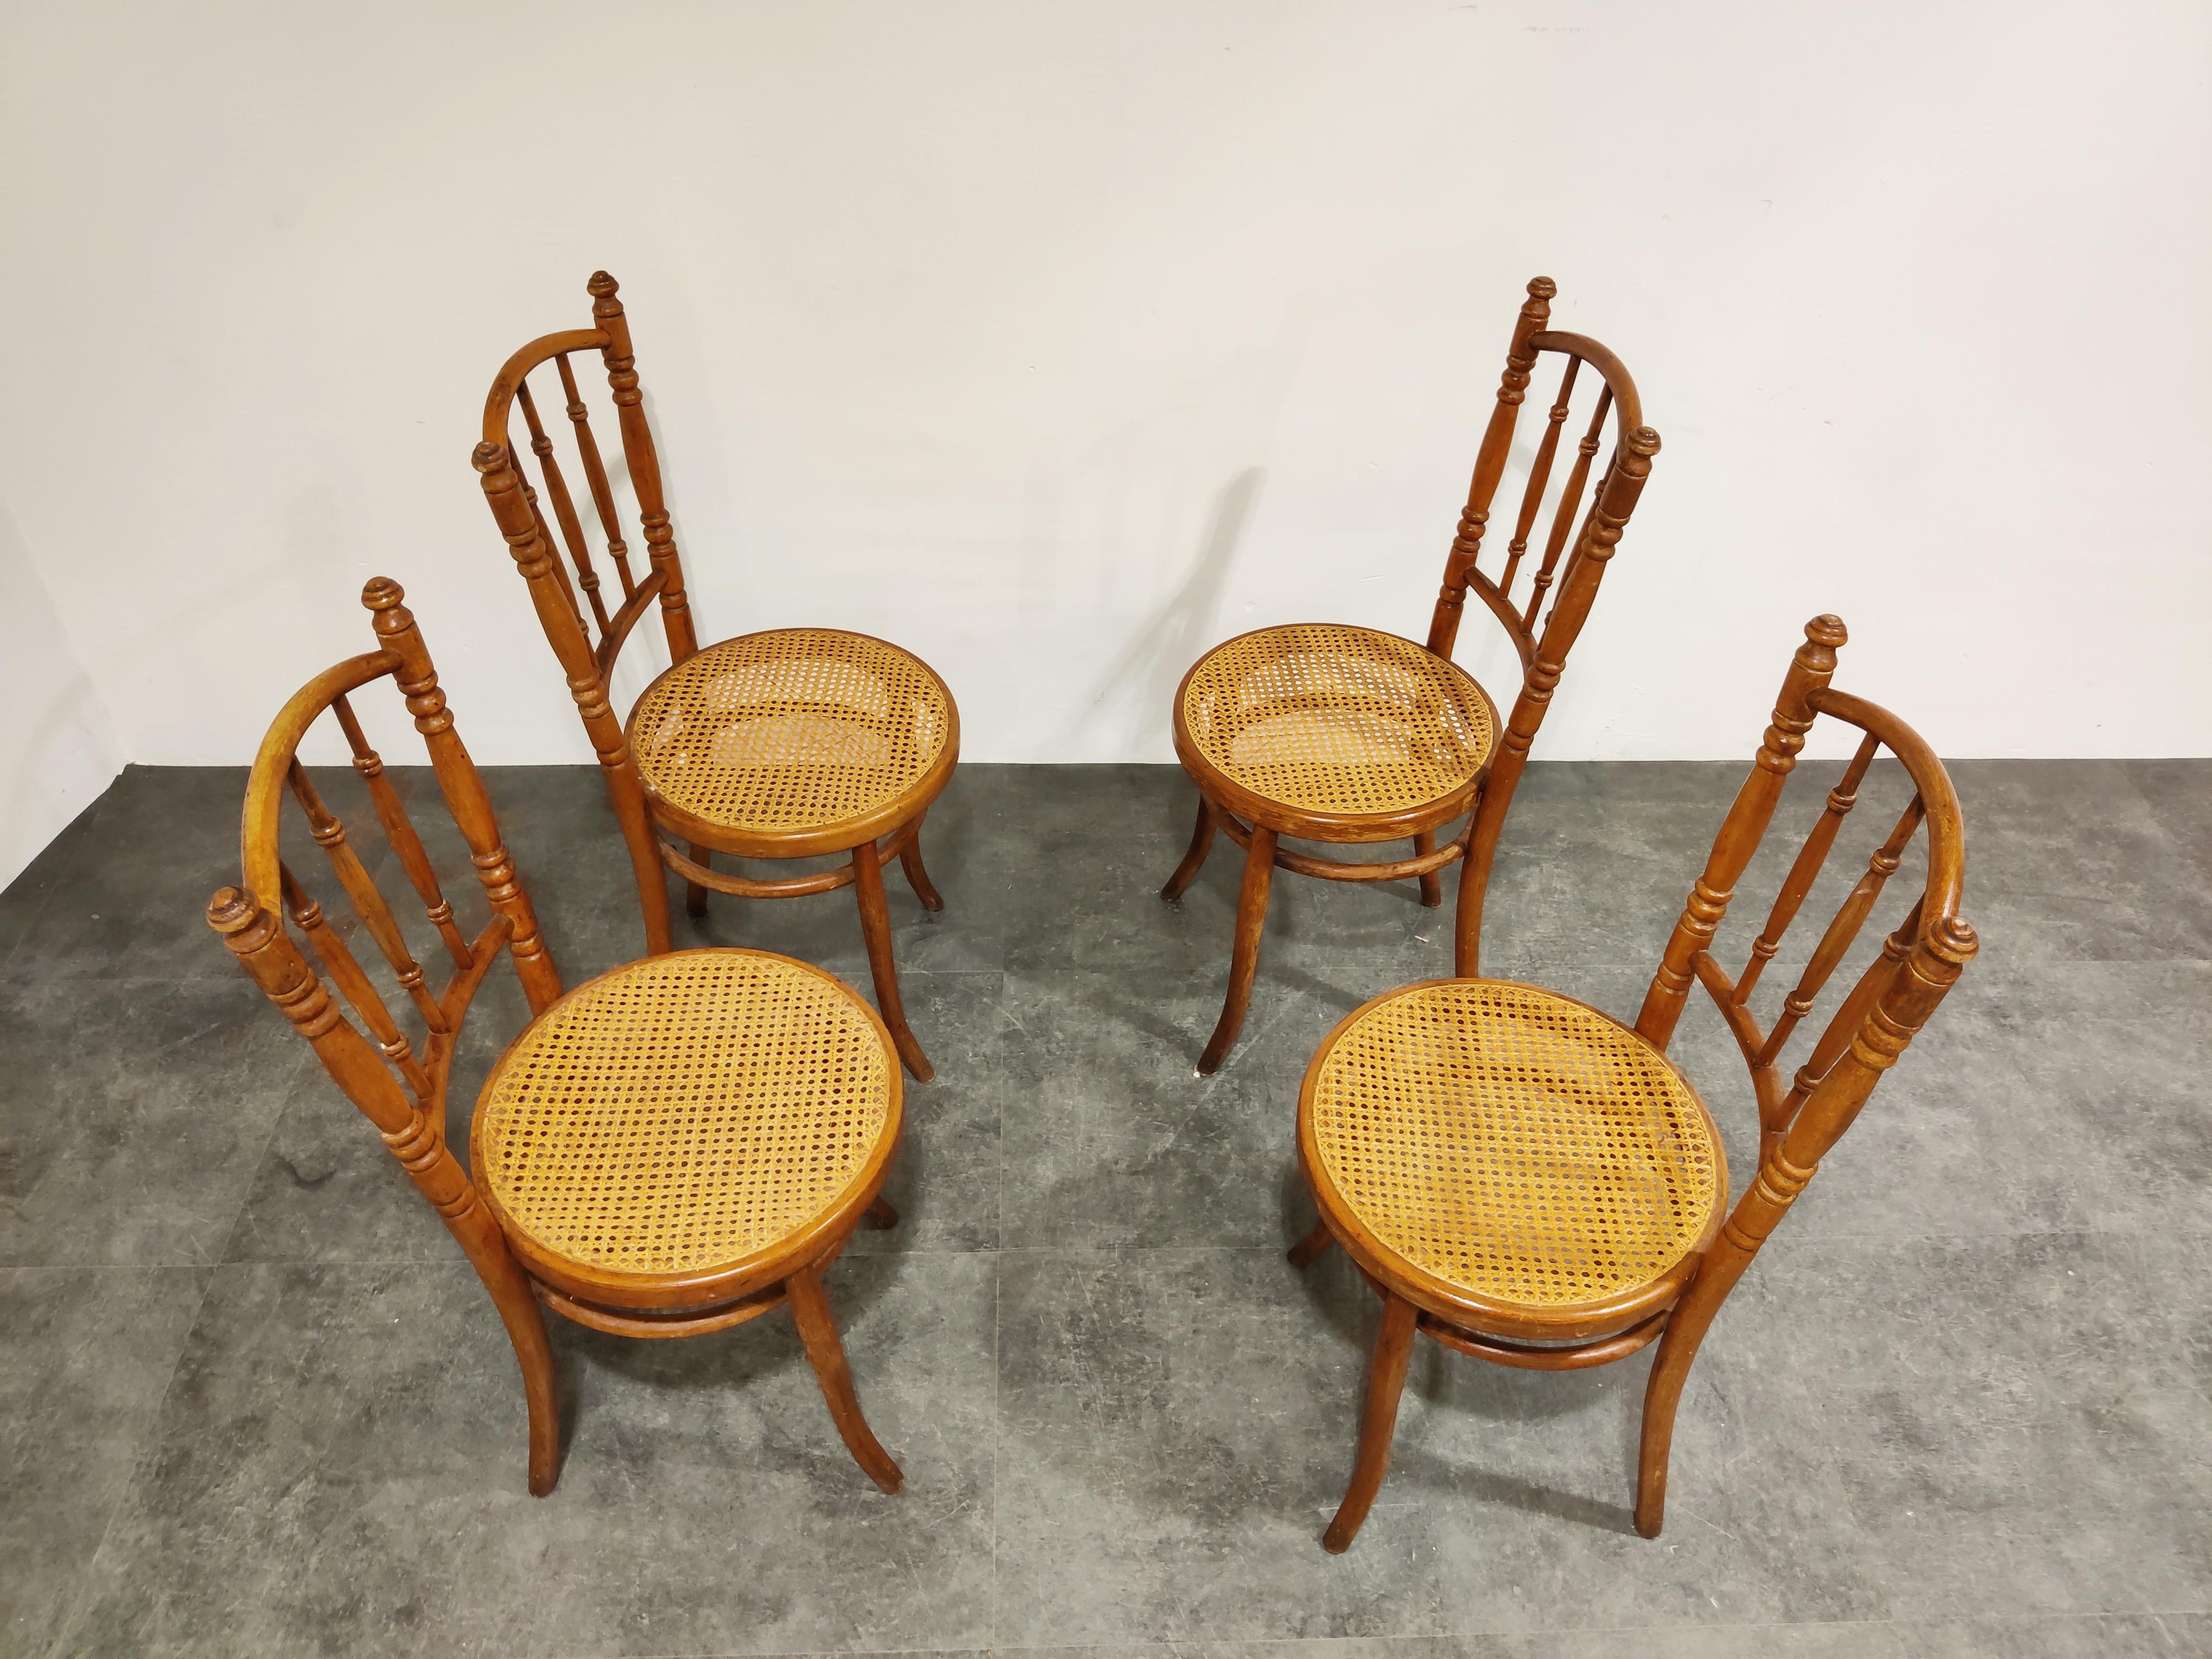 Ensemble de 4 chaises de salle à manger en bois courbé avec des sièges en rotin.

Les chaises peuvent être de marque Thonet ou J&J Kohn. Ils ne sont pas estampillés. 

Bon état, aucun dommage au rotin. L'un des fleurons est légèrement endommagé